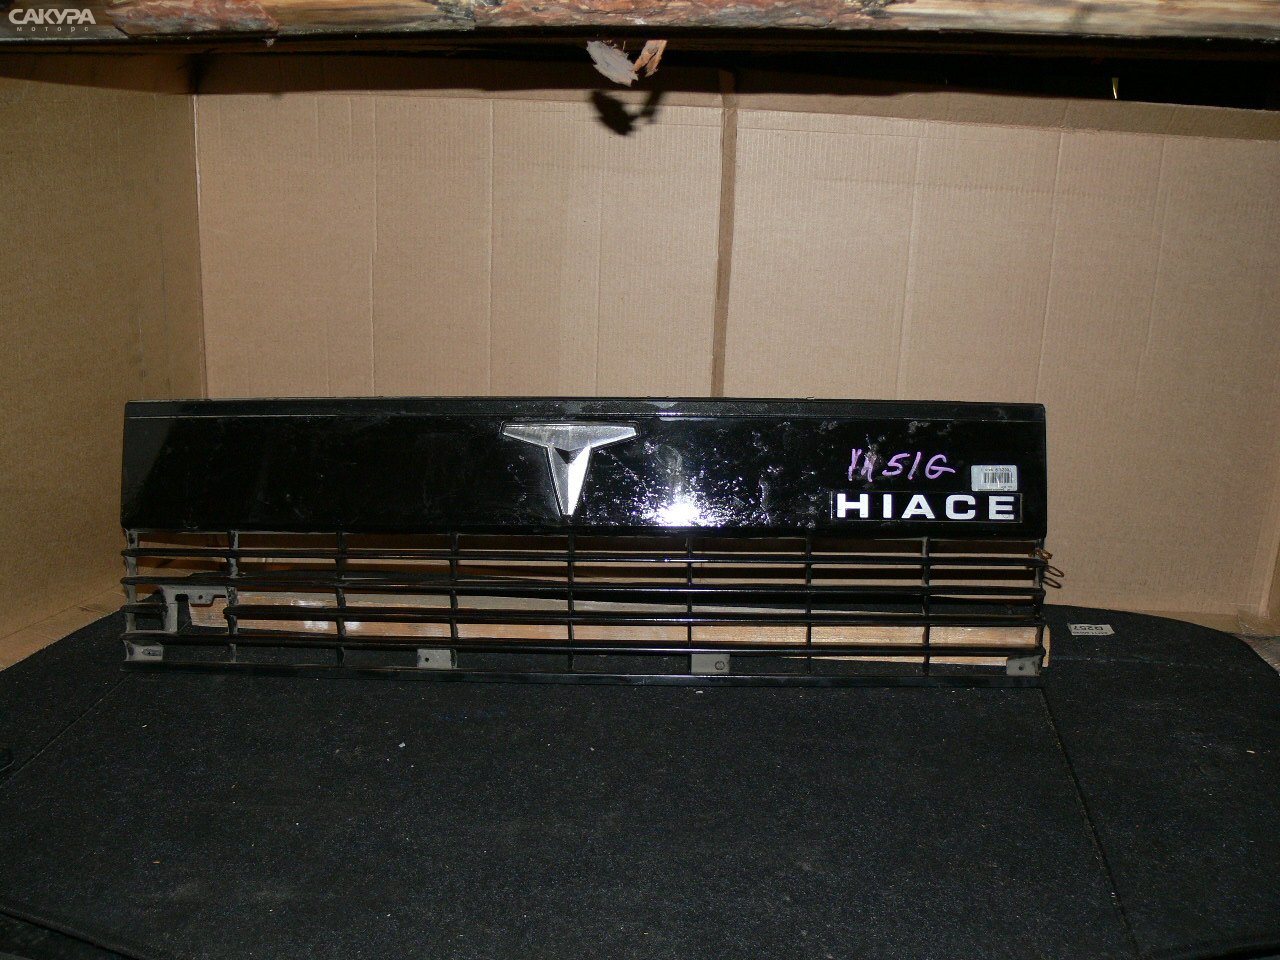 Решетка радиатора Toyota Hiace LH51G: купить в Сакура Иркутск.